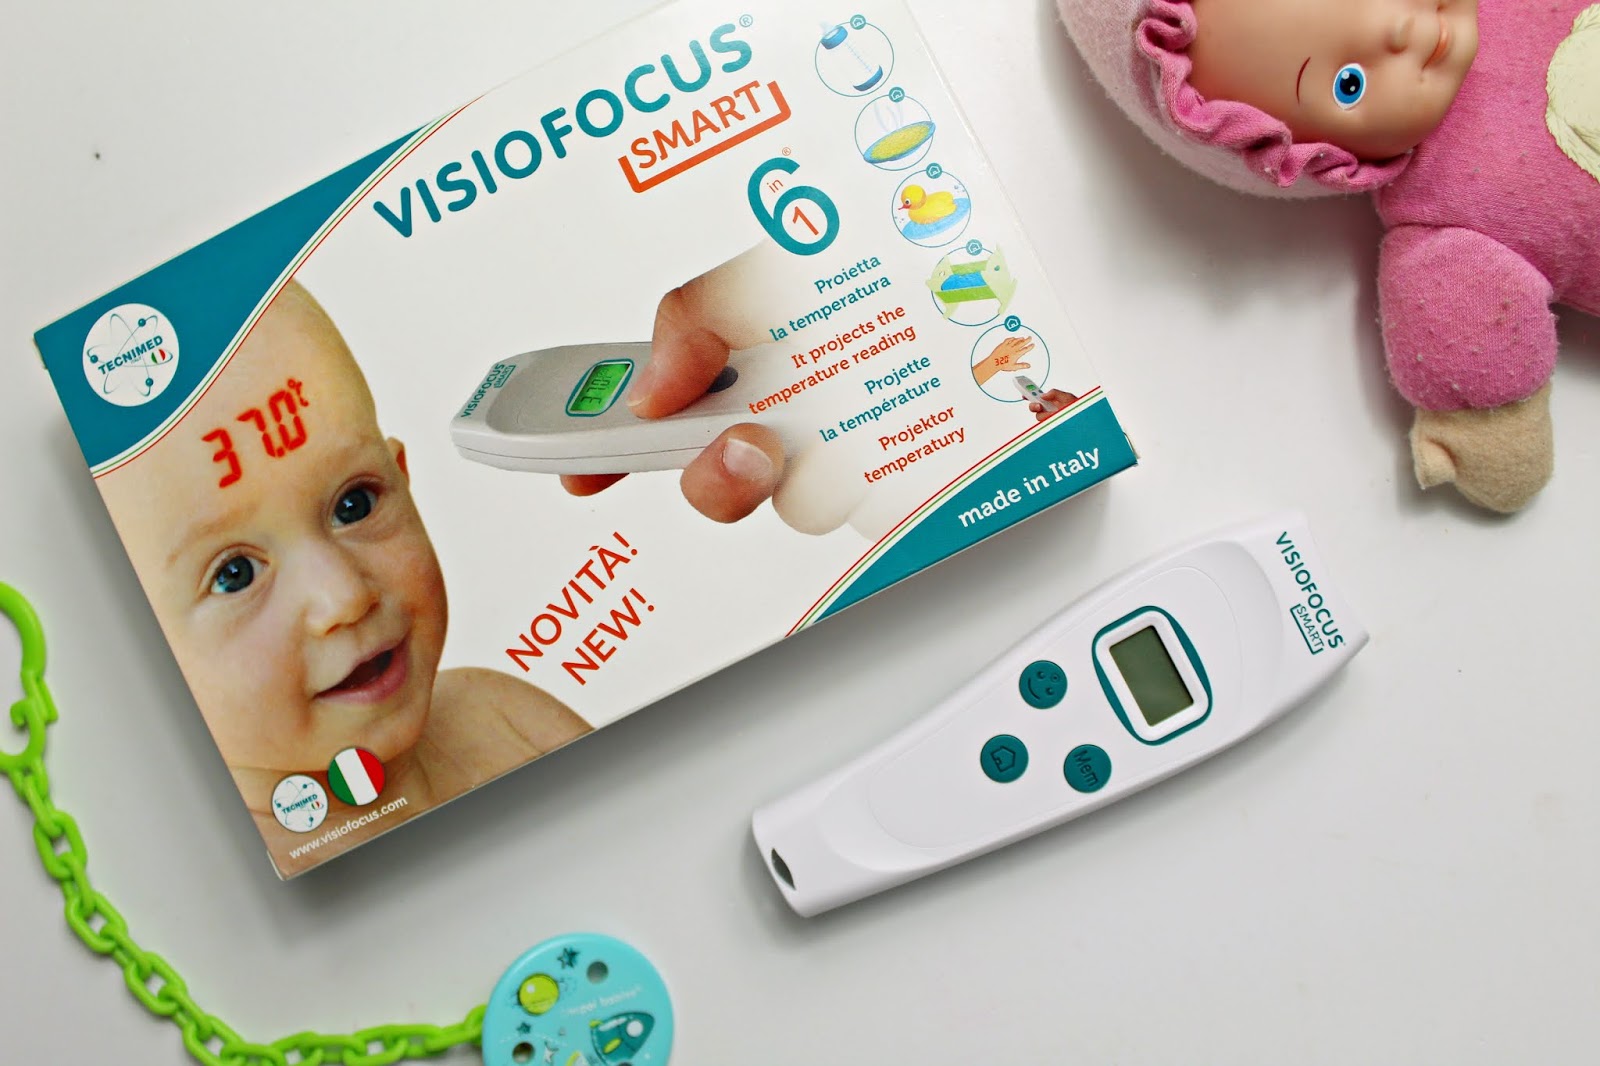 Visiofocus smart - dobry termometr dla dziecka, niemowlaka i dorosłego | Zuzka Pisze